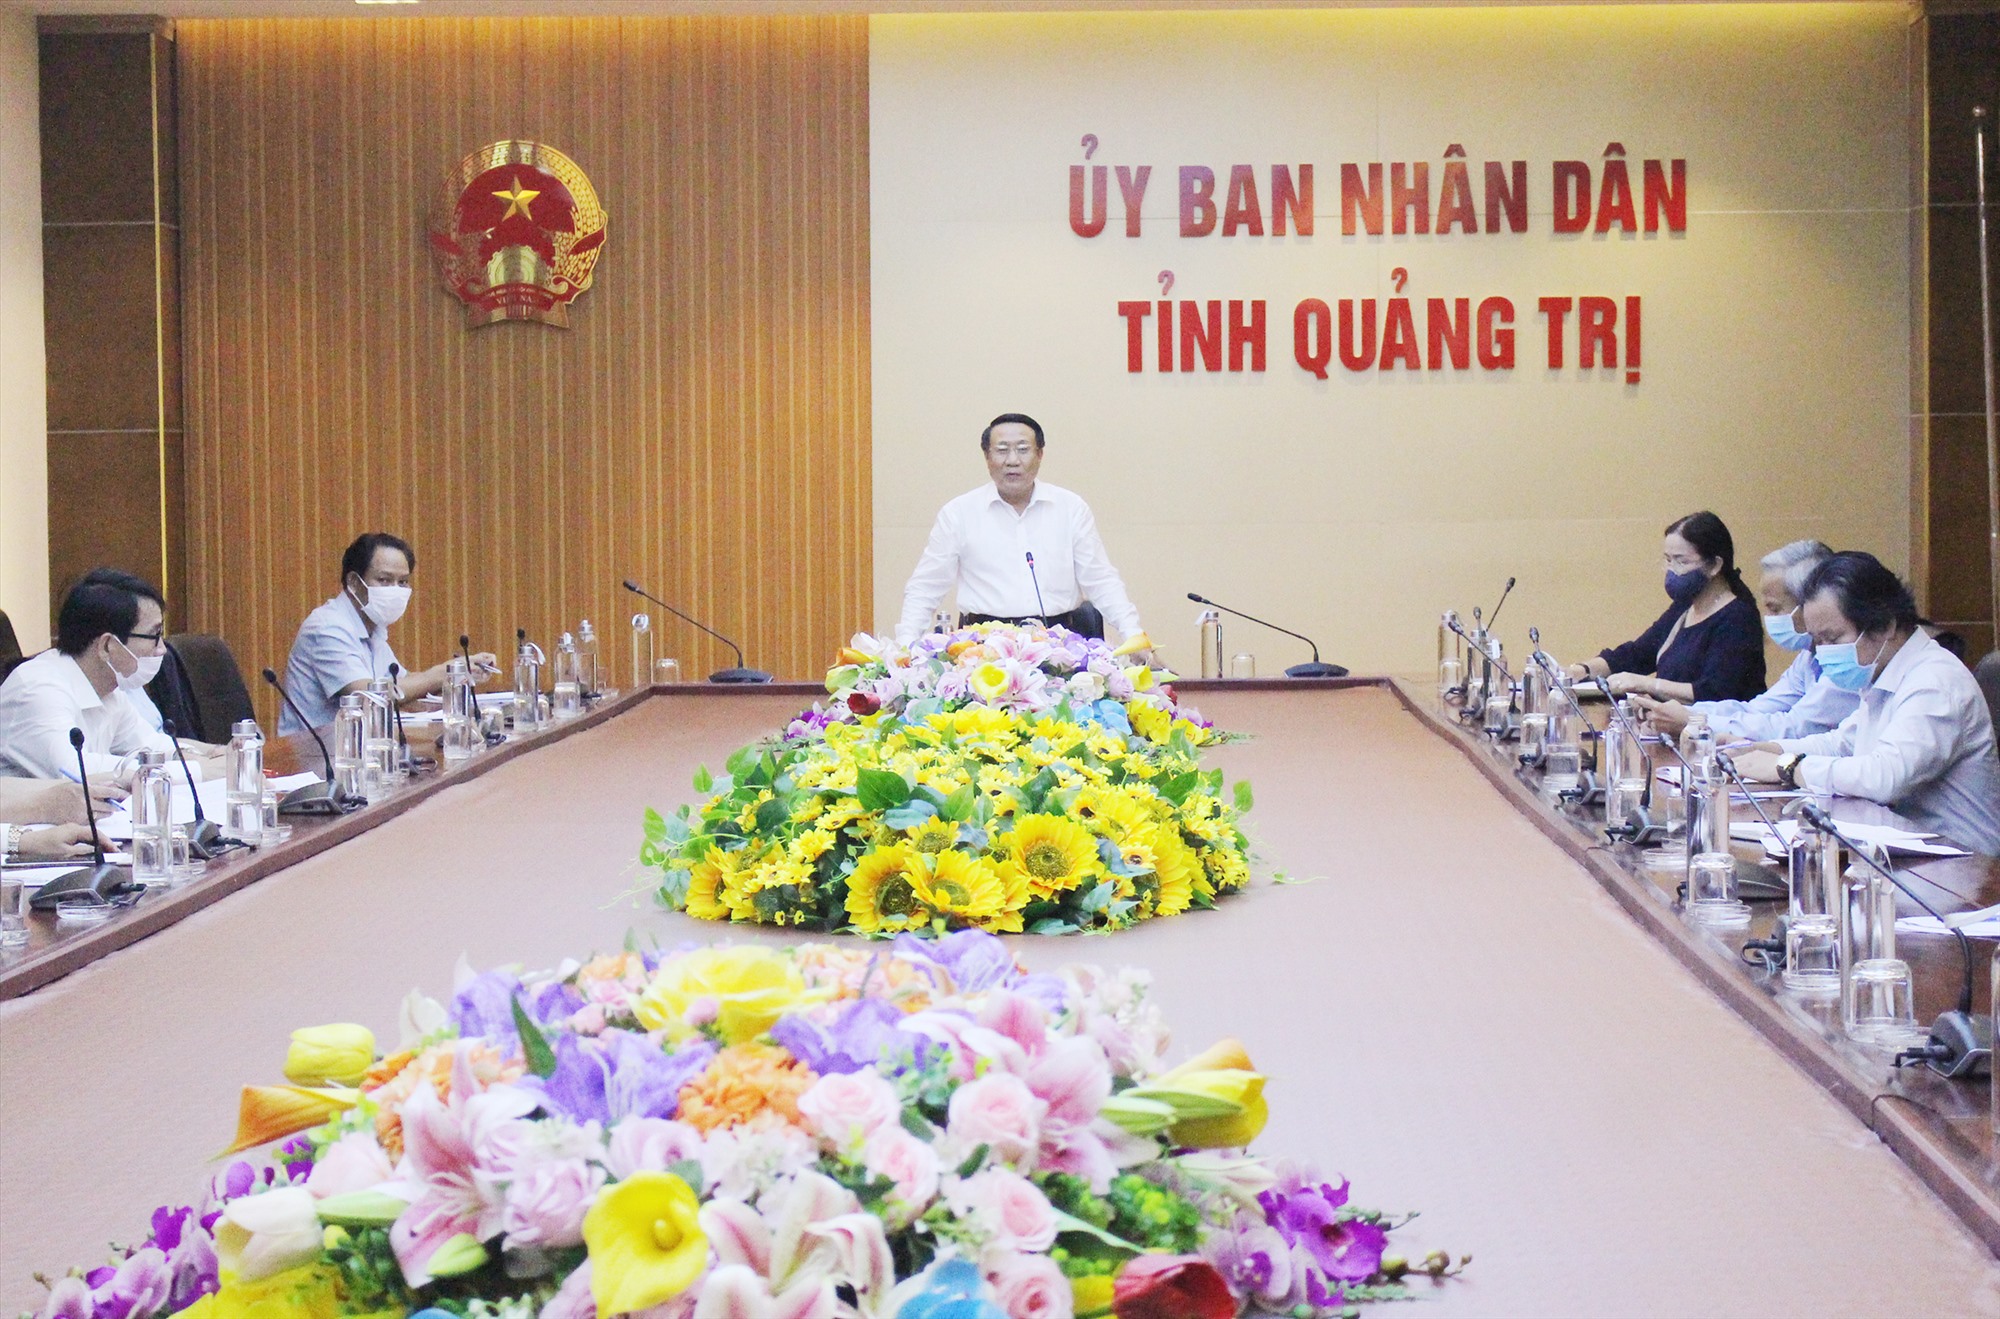 Phó Chủ tịch Thường trực UBND tỉnh, Trưởng Ban Chỉ đạo kỳ thi Hà Sỹ Đồng phát biểu chỉ đạo tại cuộc họp-Ảnh: Tú Linh